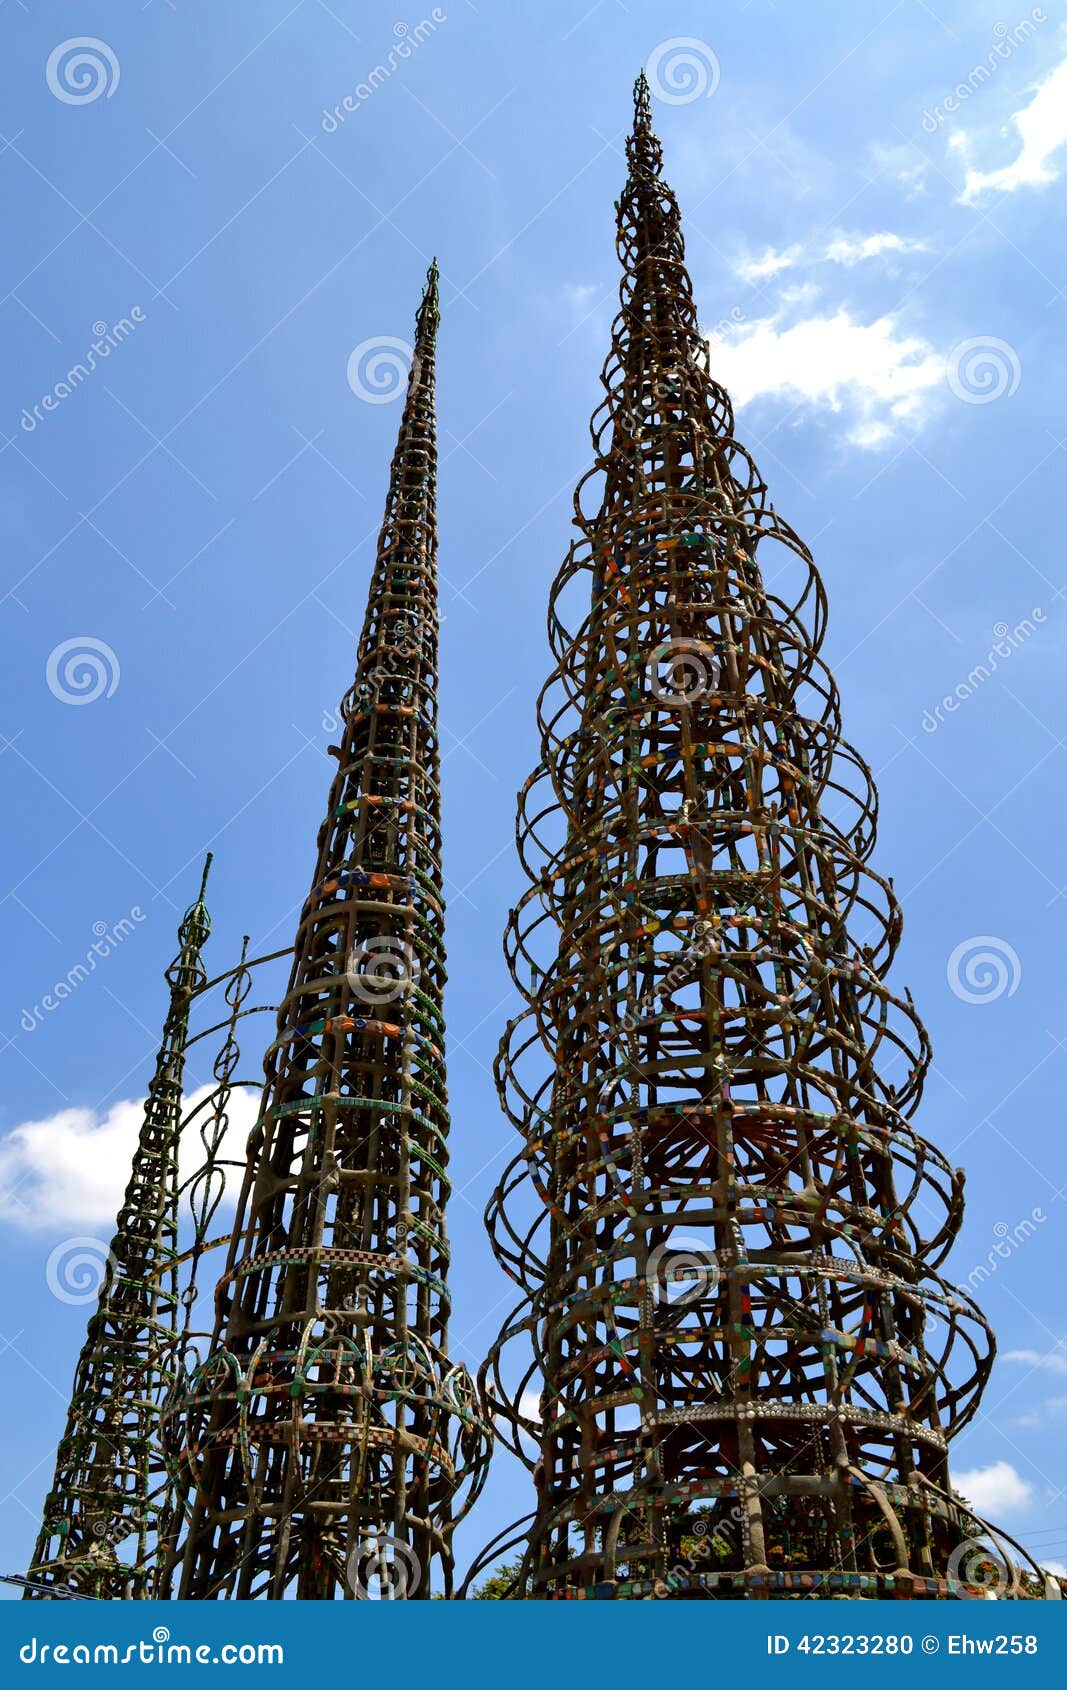 watts towers